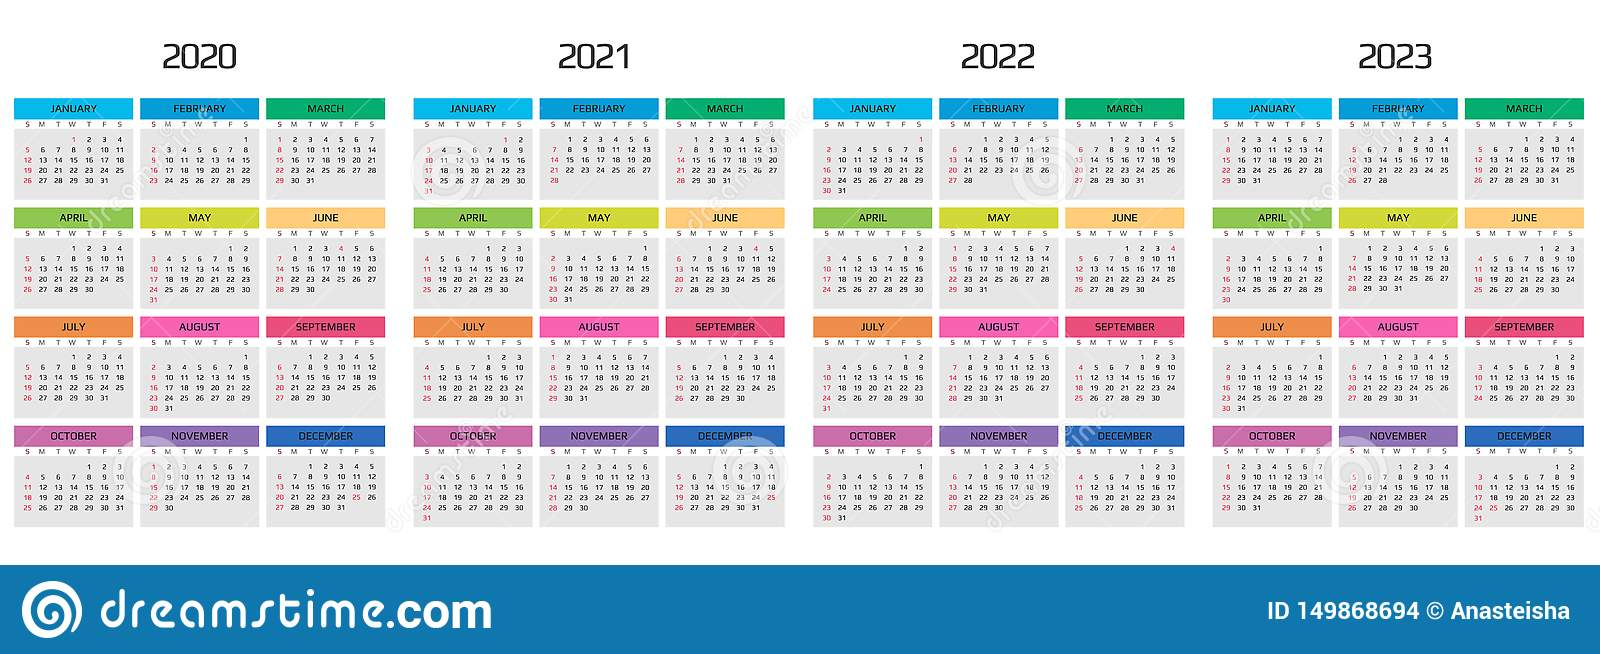 Risd Calendar 2022-2023 - 2023Calendar.net